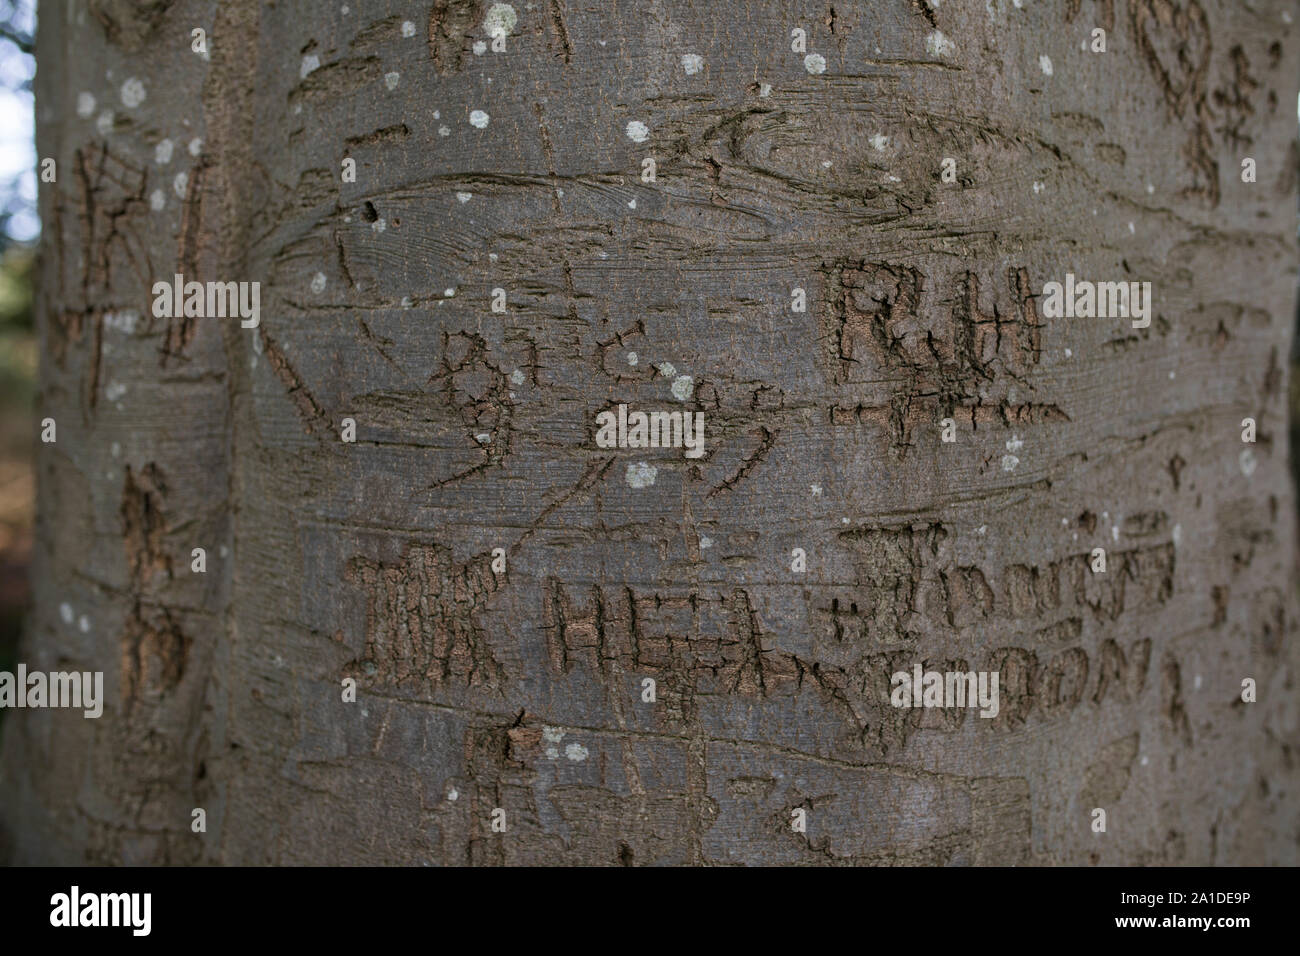 L'écorce de hêtre sculpté montrant des lettres, initiales, noms et années au niveau du tronc Banque D'Images